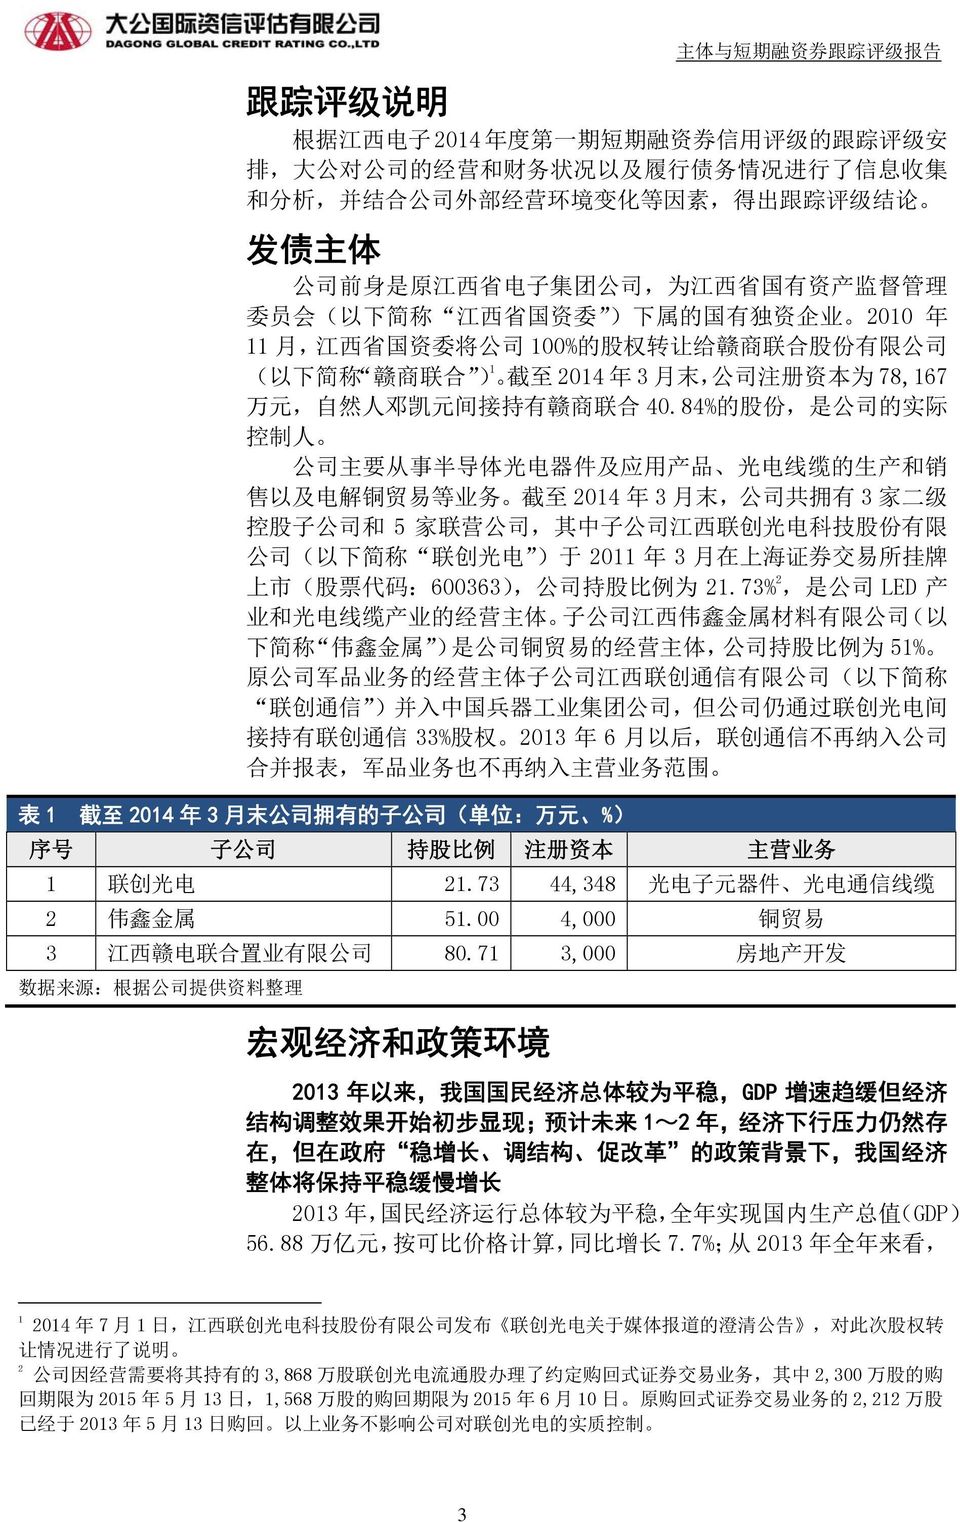 末, 公 司 注 册 资 本 为 78,167 万 元, 自 然 人 邓 凯 元 间 接 持 有 赣 商 联 合 40.